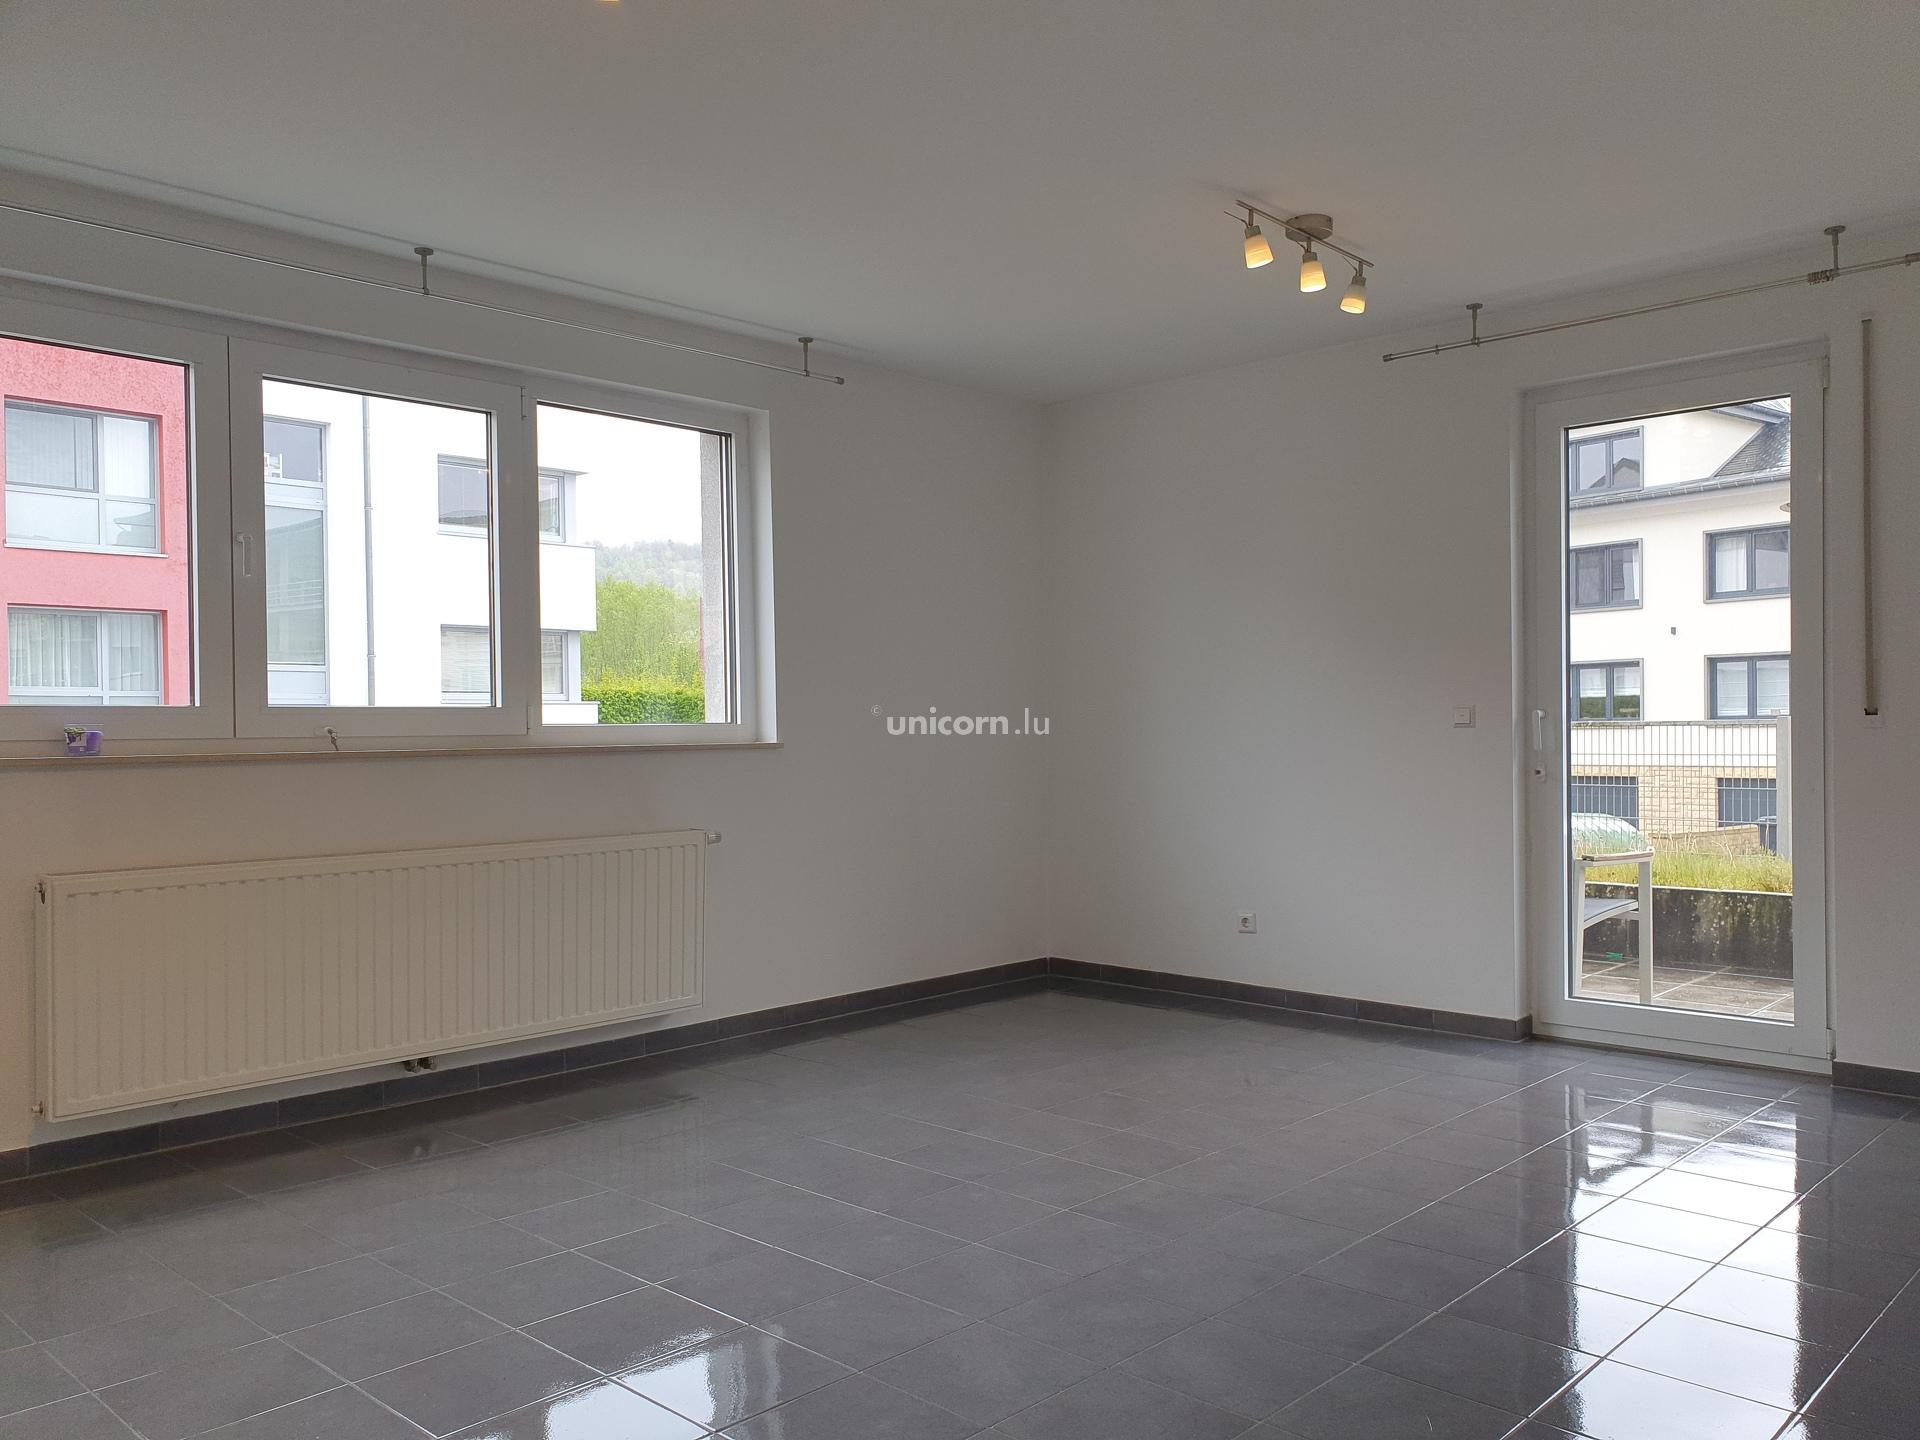 Apartment for rent in Bereldange  - 62.5m²